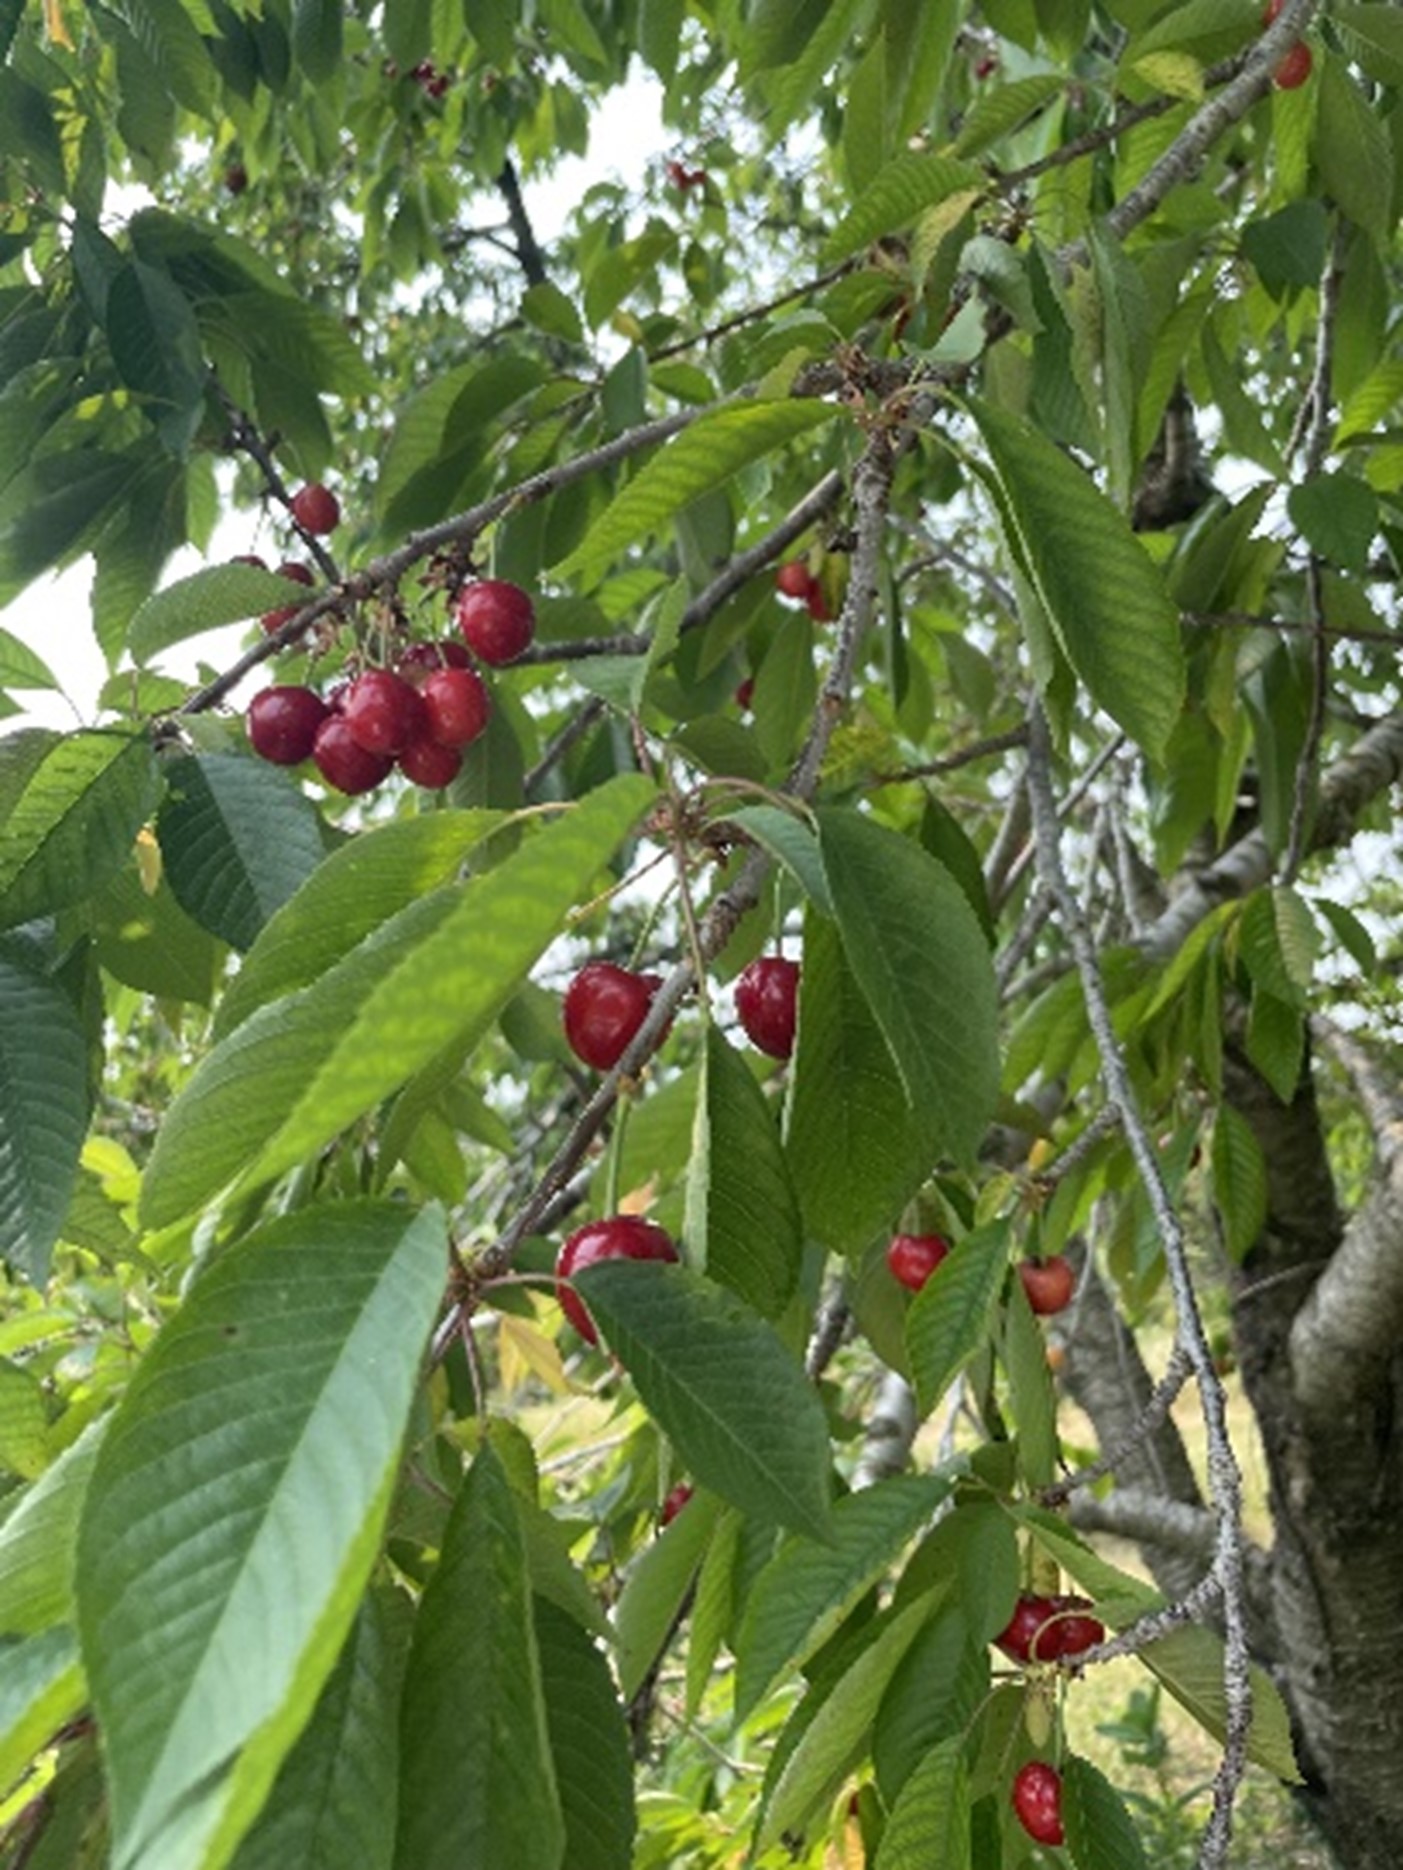 Sweet cherries ripening.